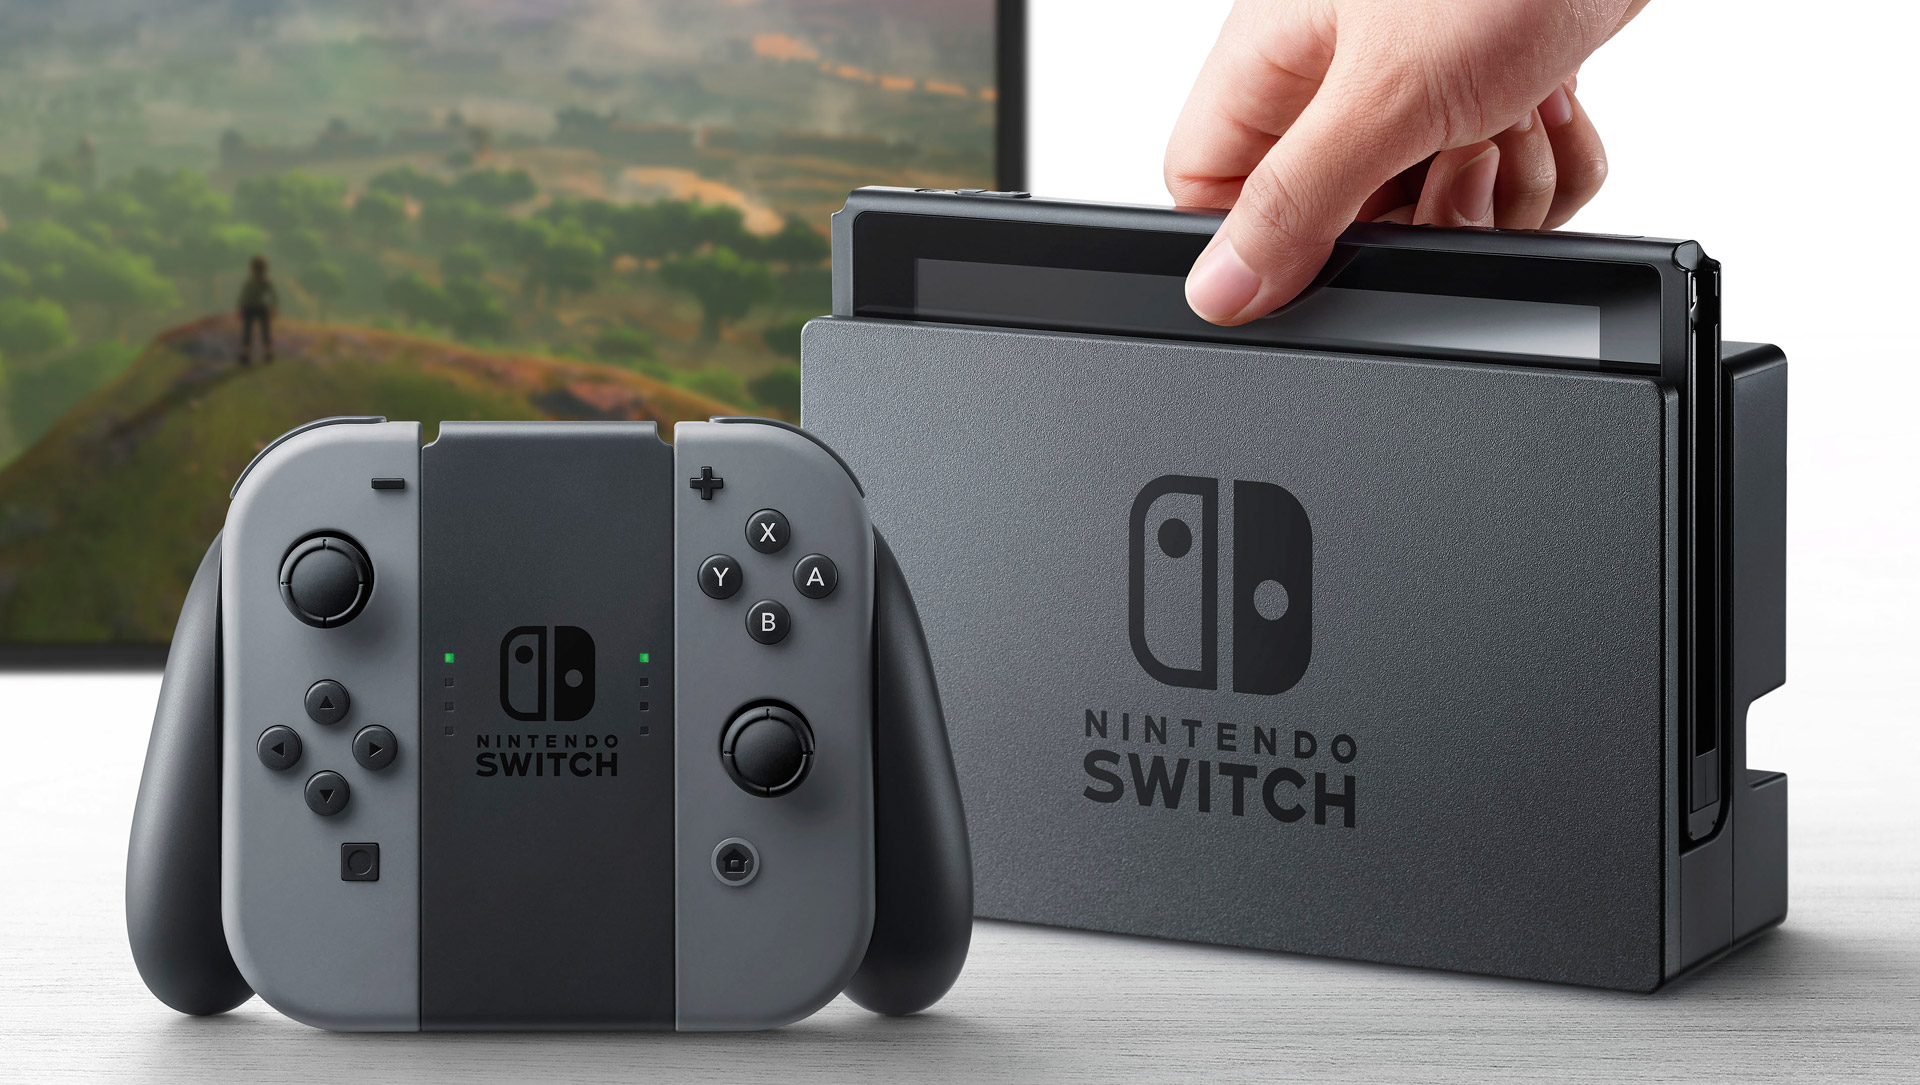 Nintendo prevé vender alrededor de 40 millones de Nintendo Switch de aquí al 2020